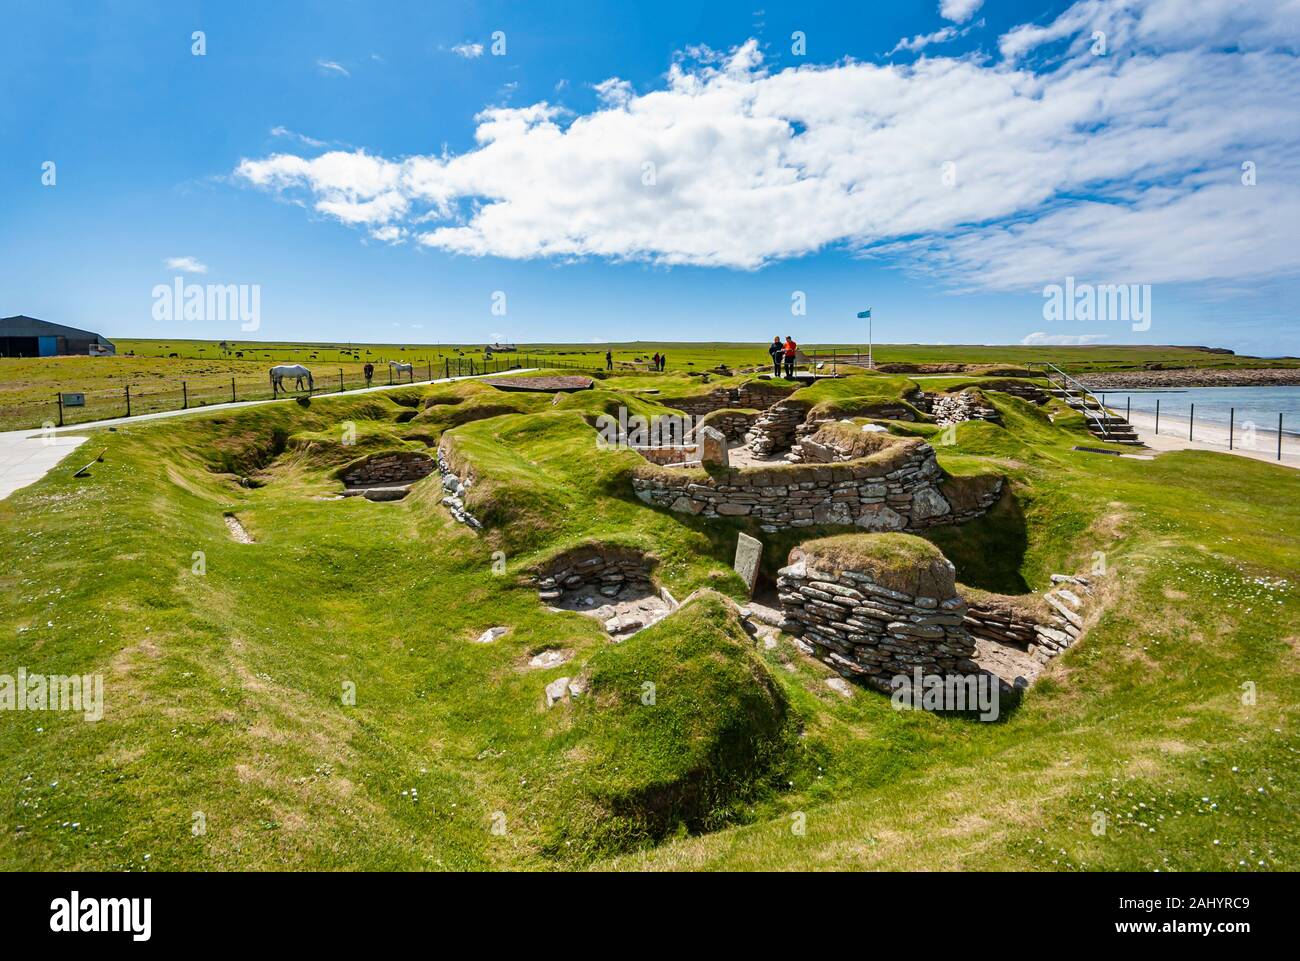 La aldea neolítica de Skara Brae en Orkney Escocia continental con diez casas de la edad de piedra que data de alrededor de 3000 años A.C. Foto de stock